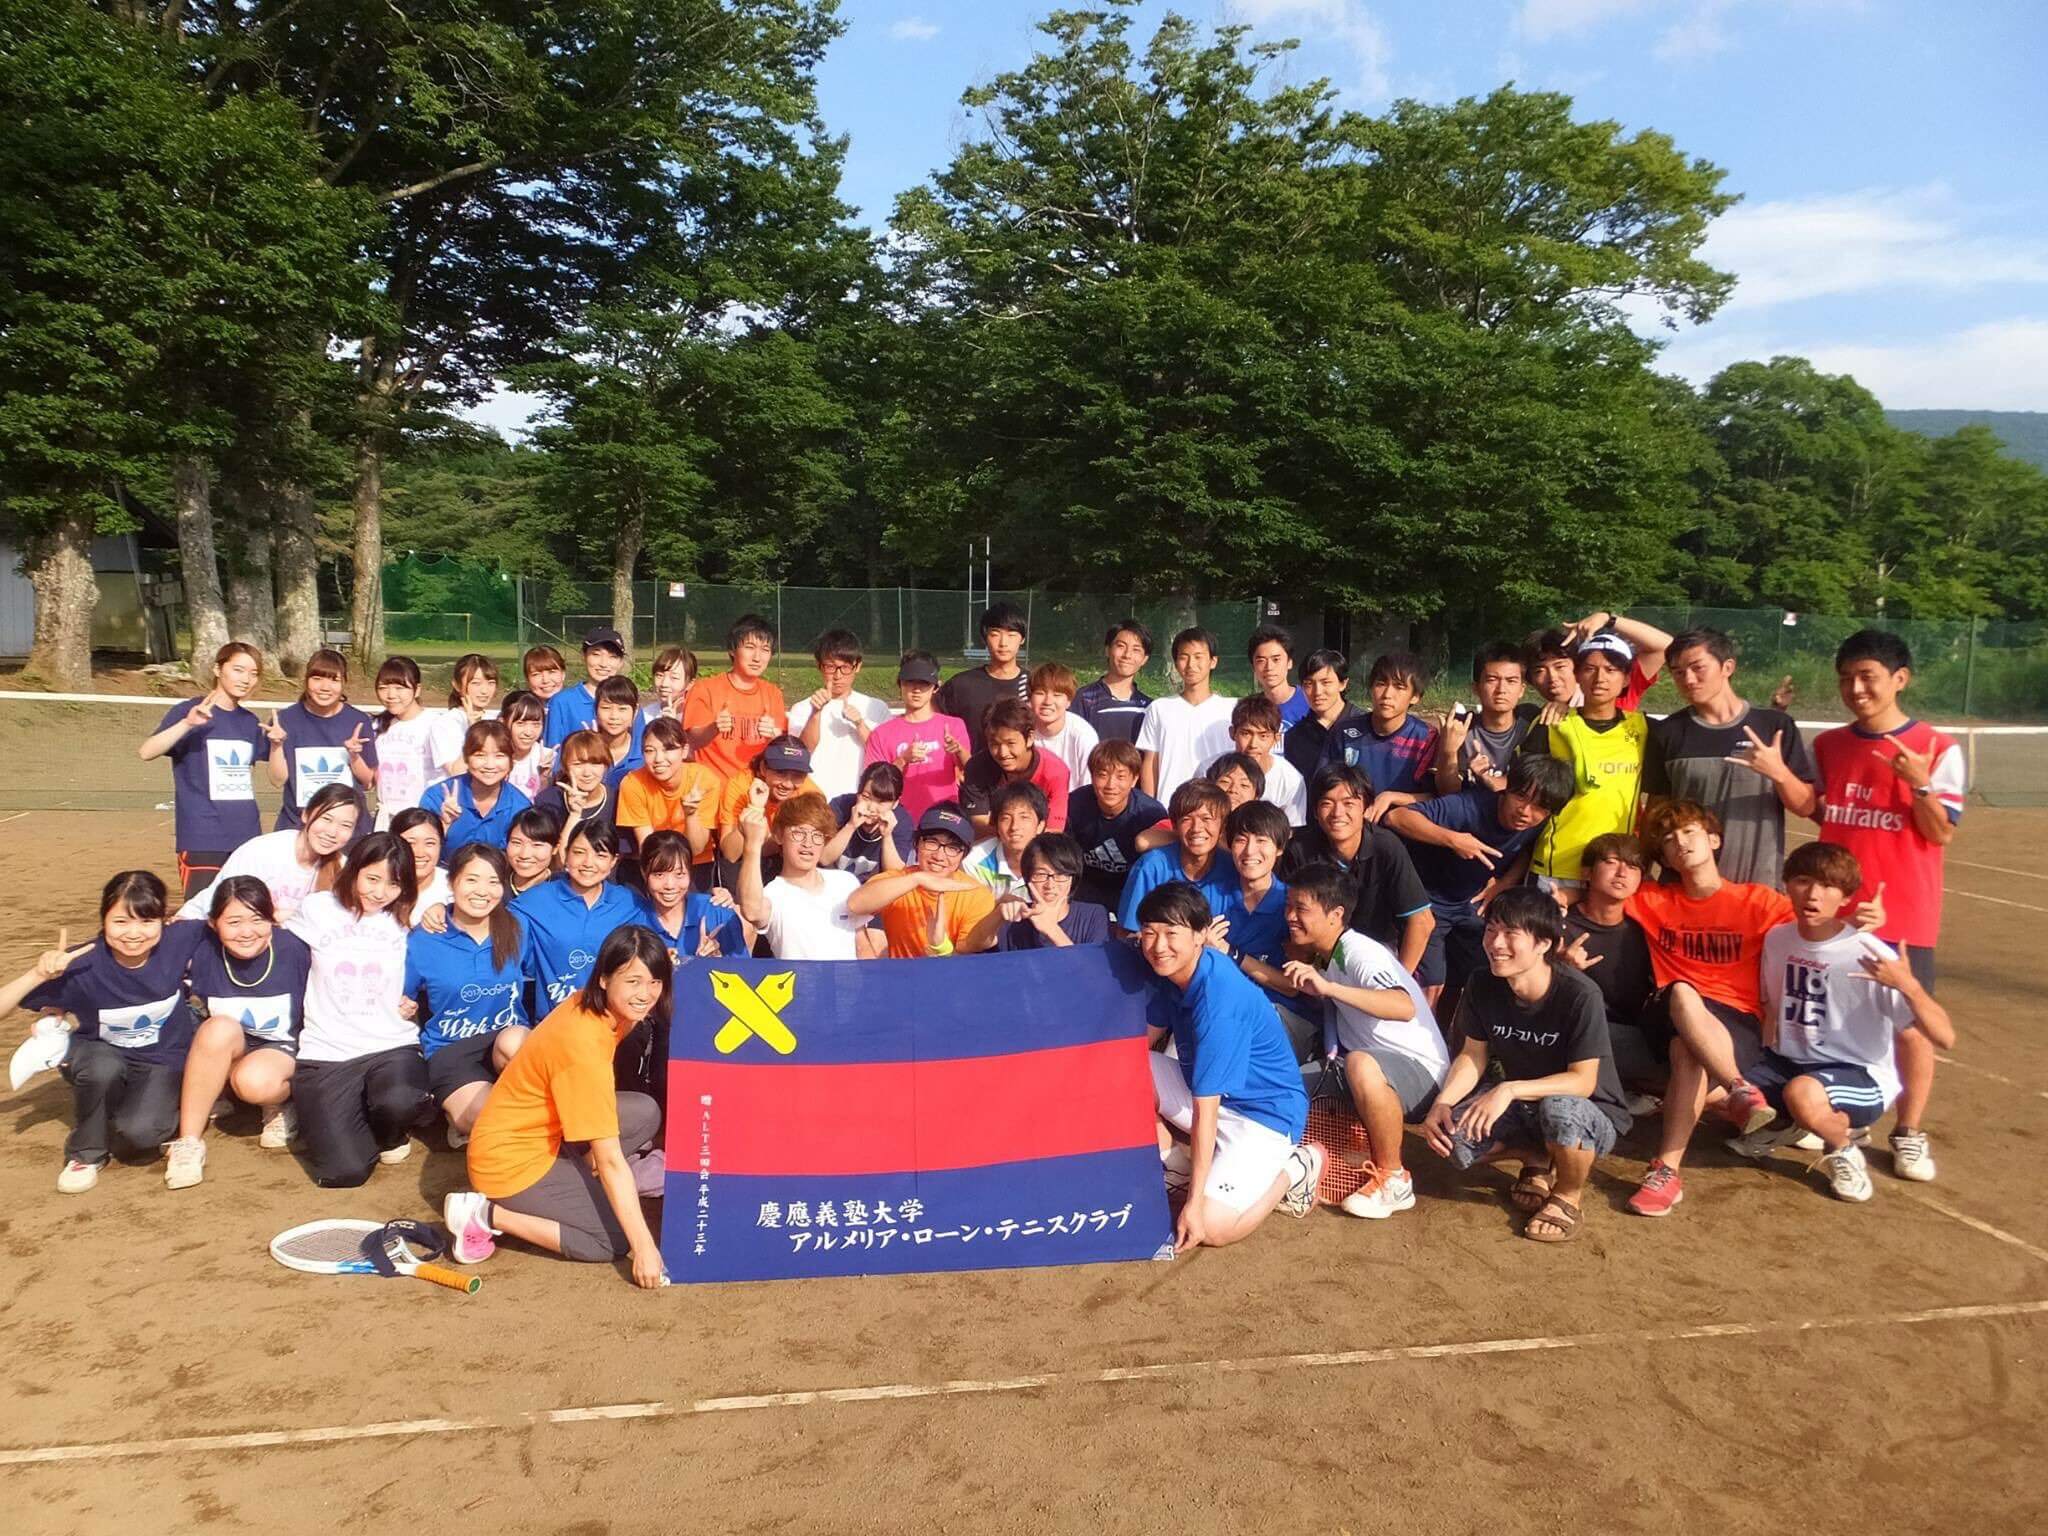 【慶應の部活・サークル紹介】アルメリア・ローン・テニスクラブ